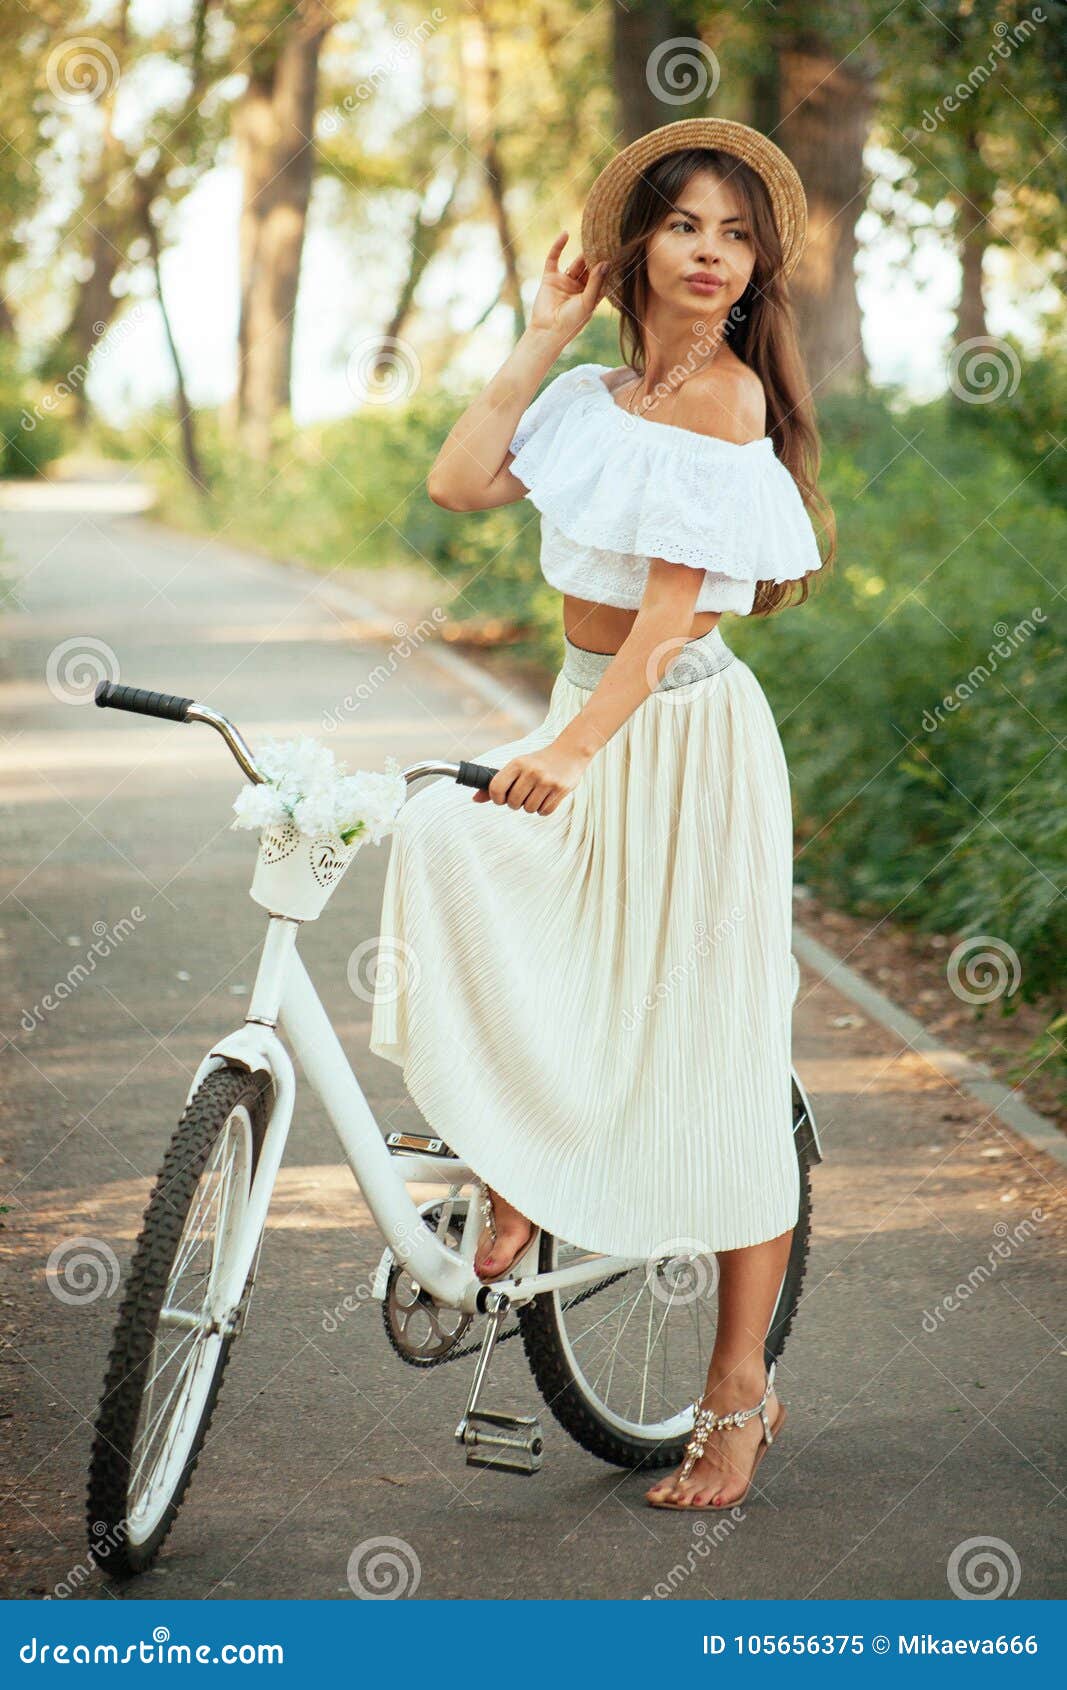 Девушка В Платье На Велосипеде Фото